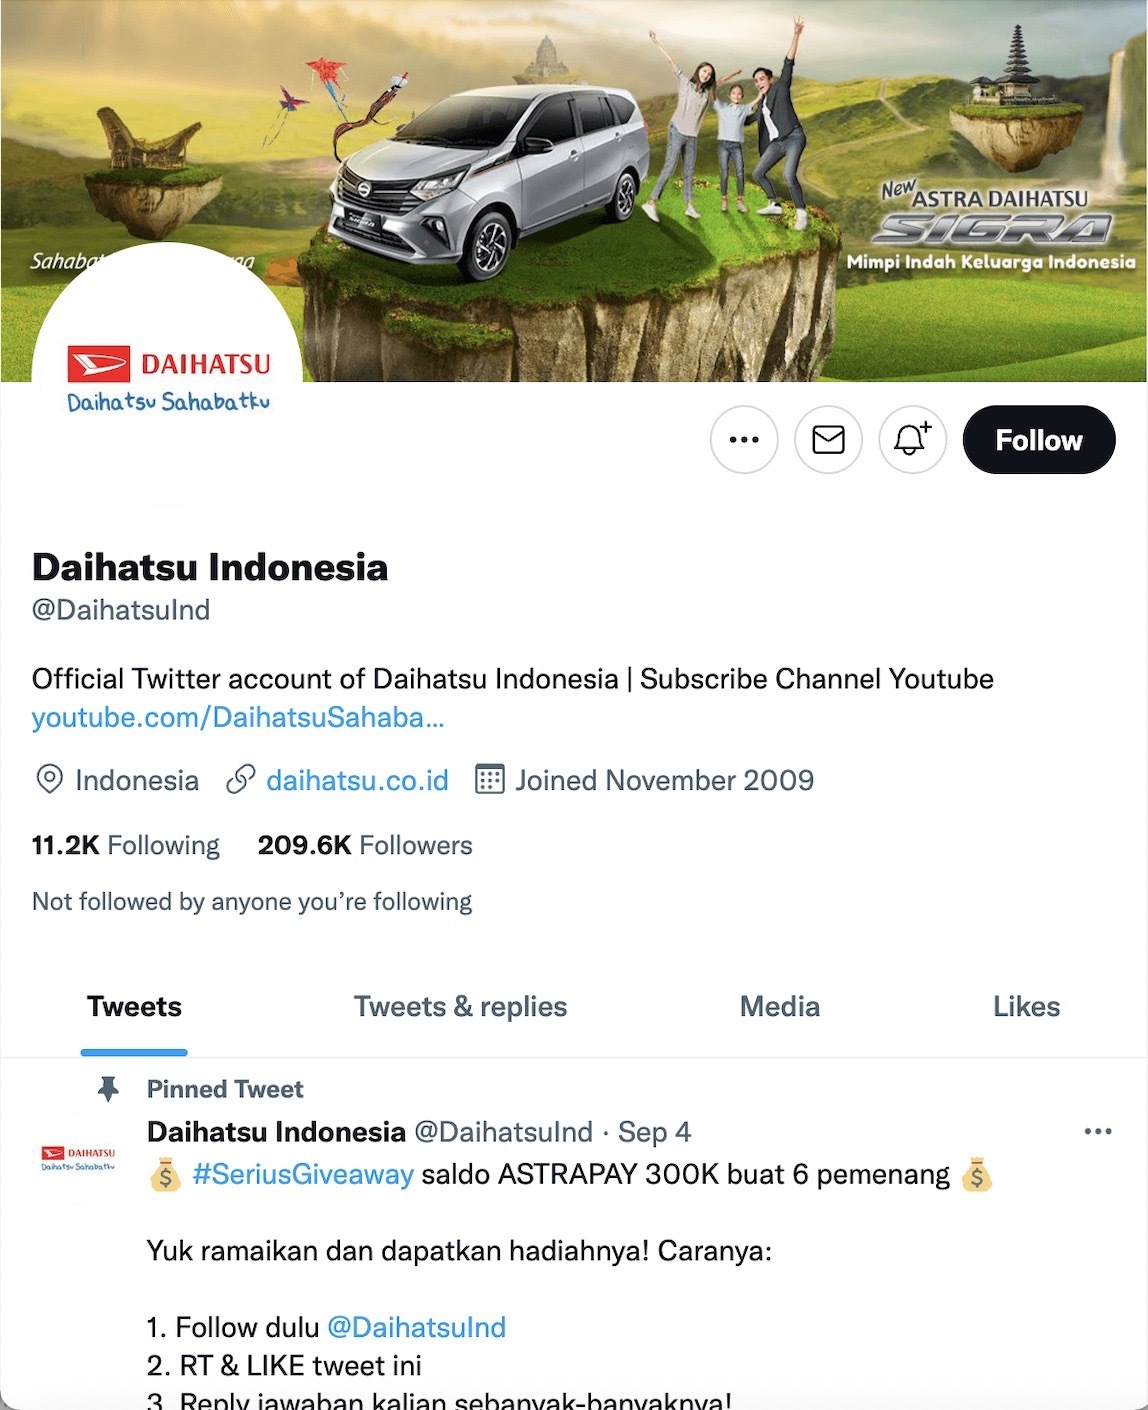 Twitter活用事例Daihastu Indonesia